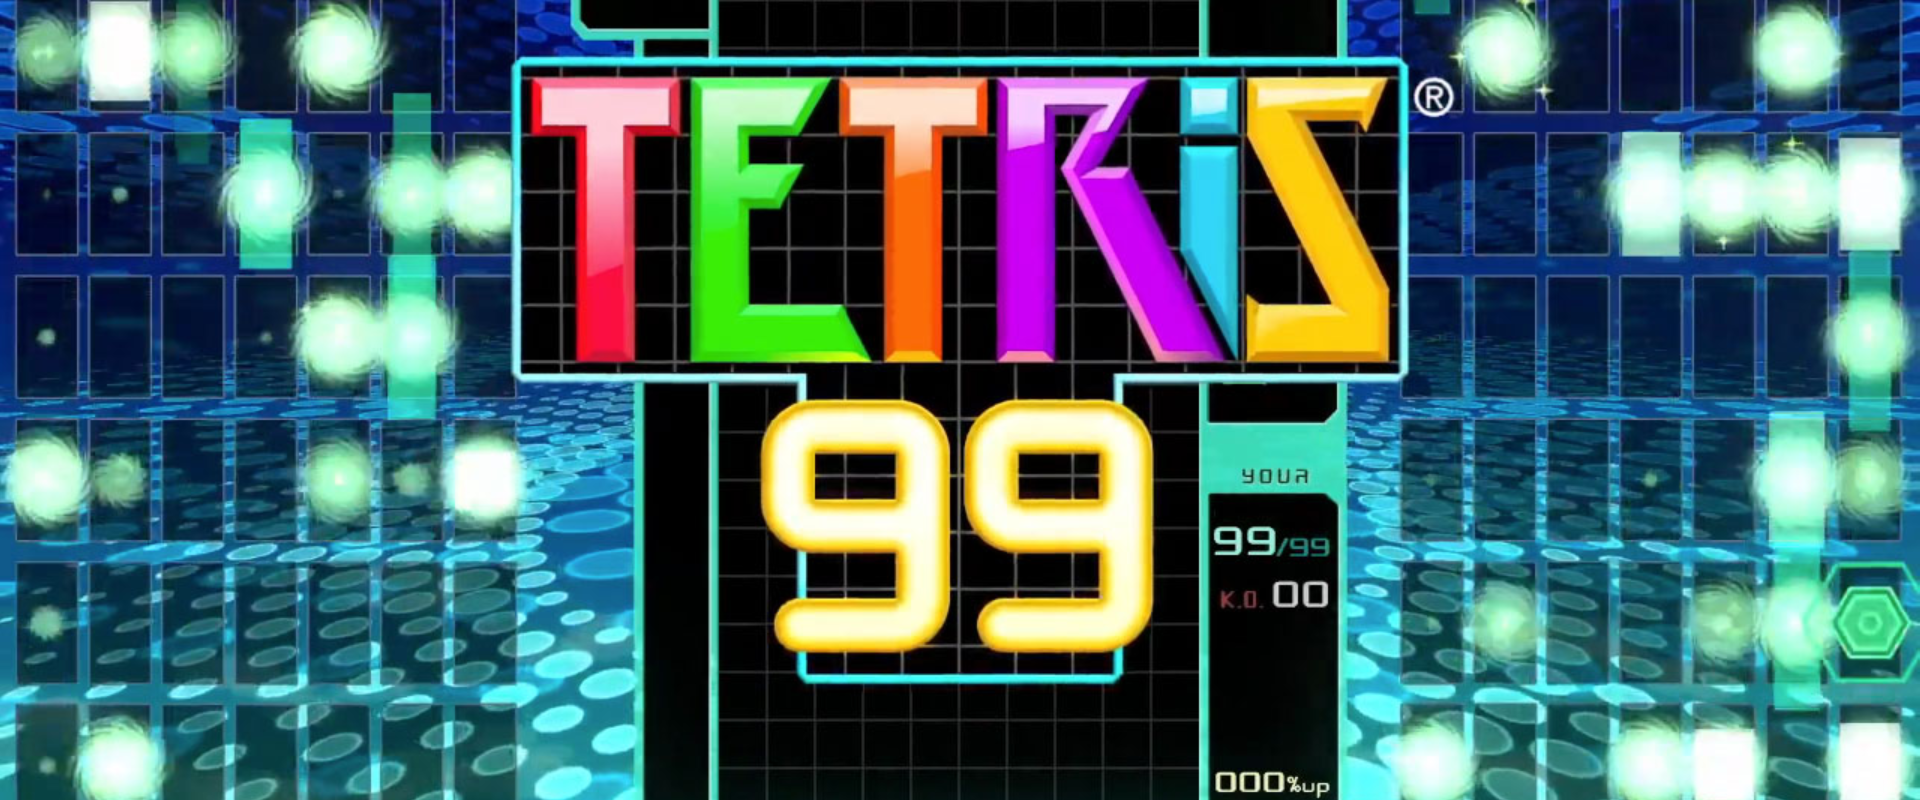 Hihetetlen, de igaz: jön a Tetris battle royale verziója